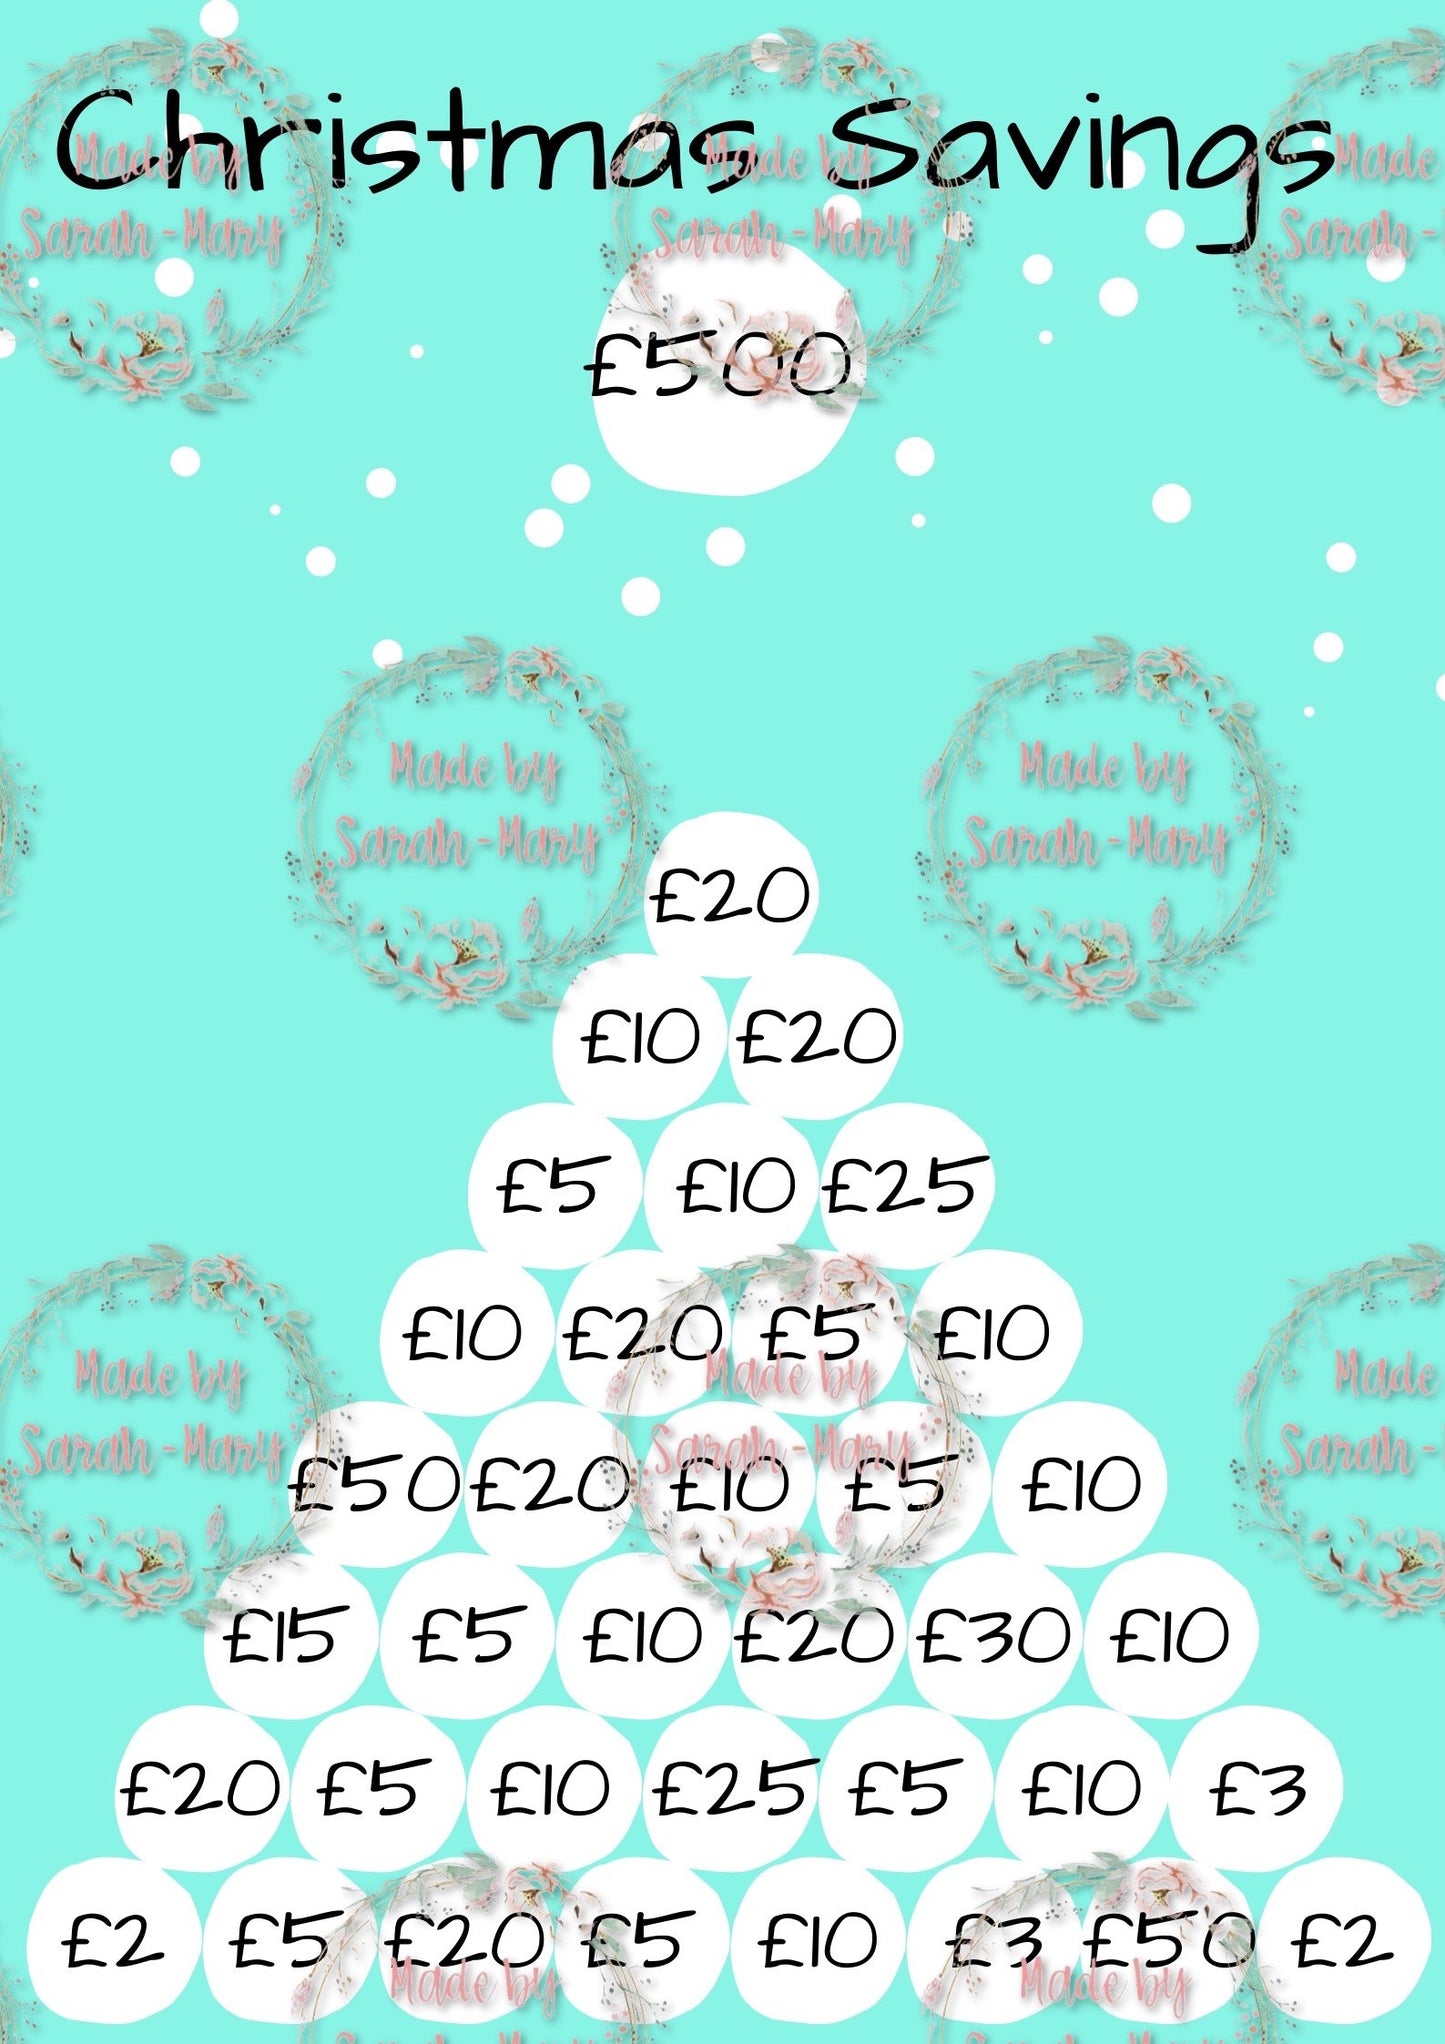 Christmas Savings Challenge - Save £300 or £500